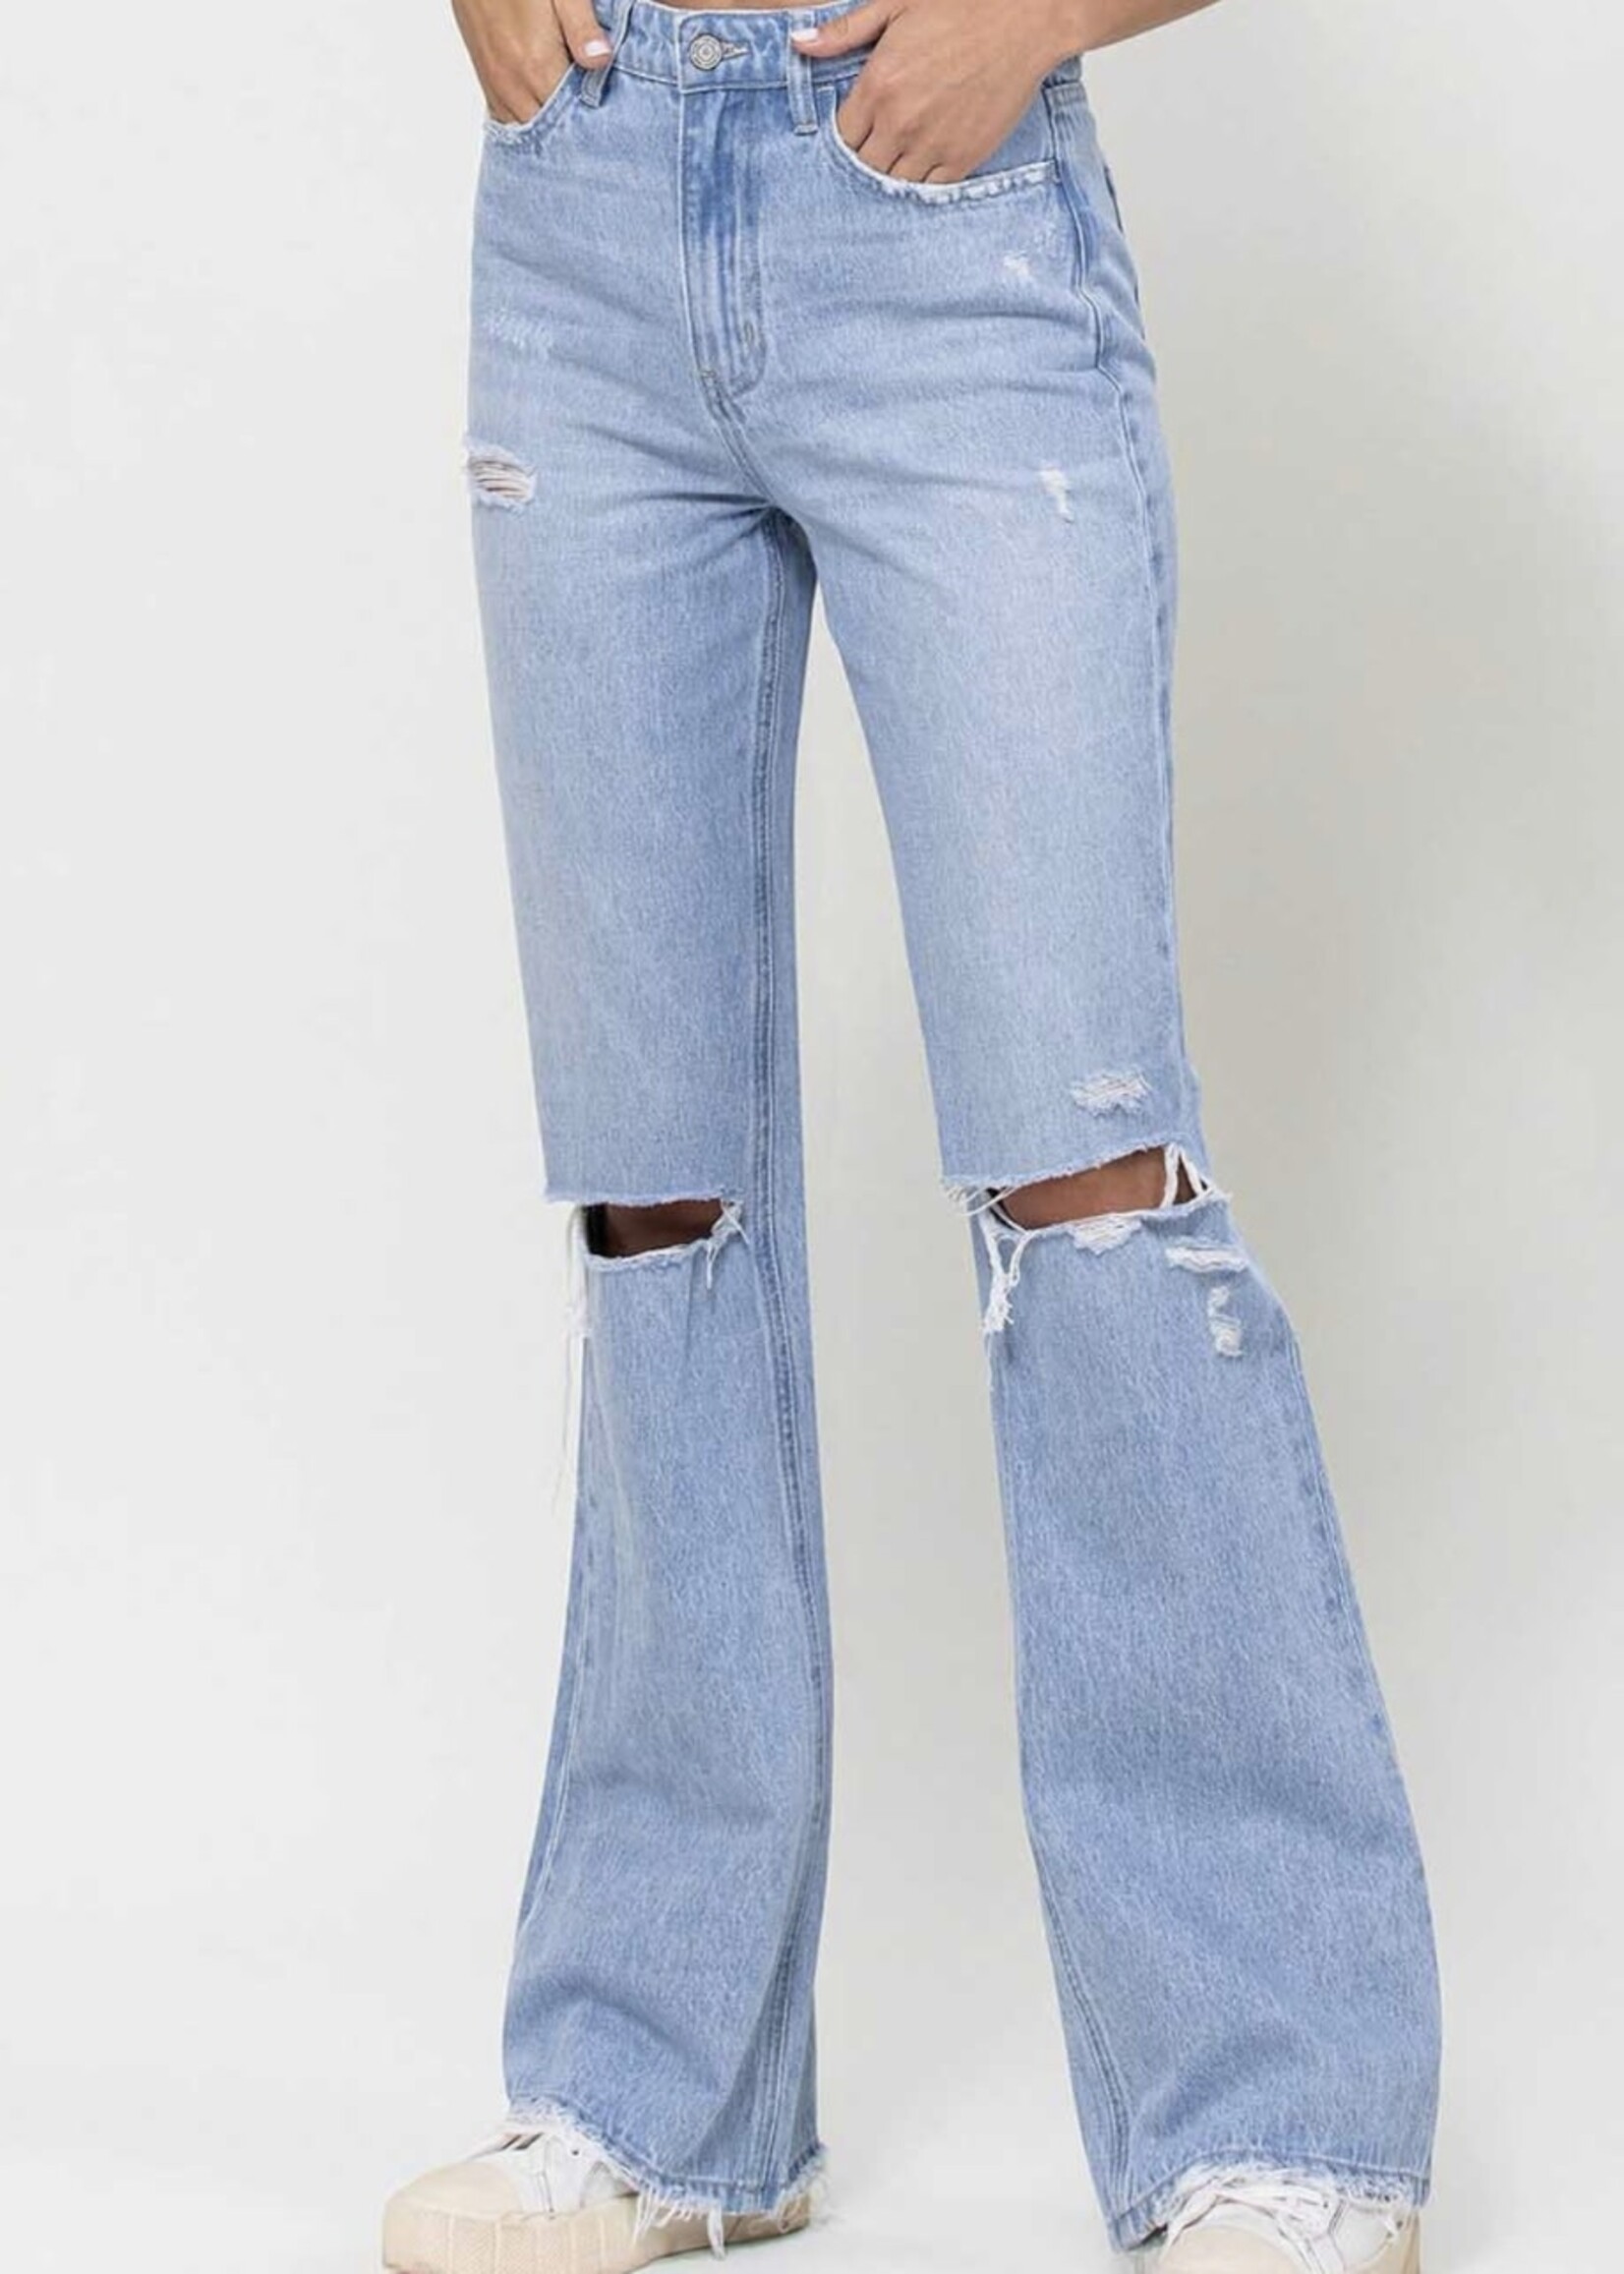 Jhett 90's Vintage Flare Jeans